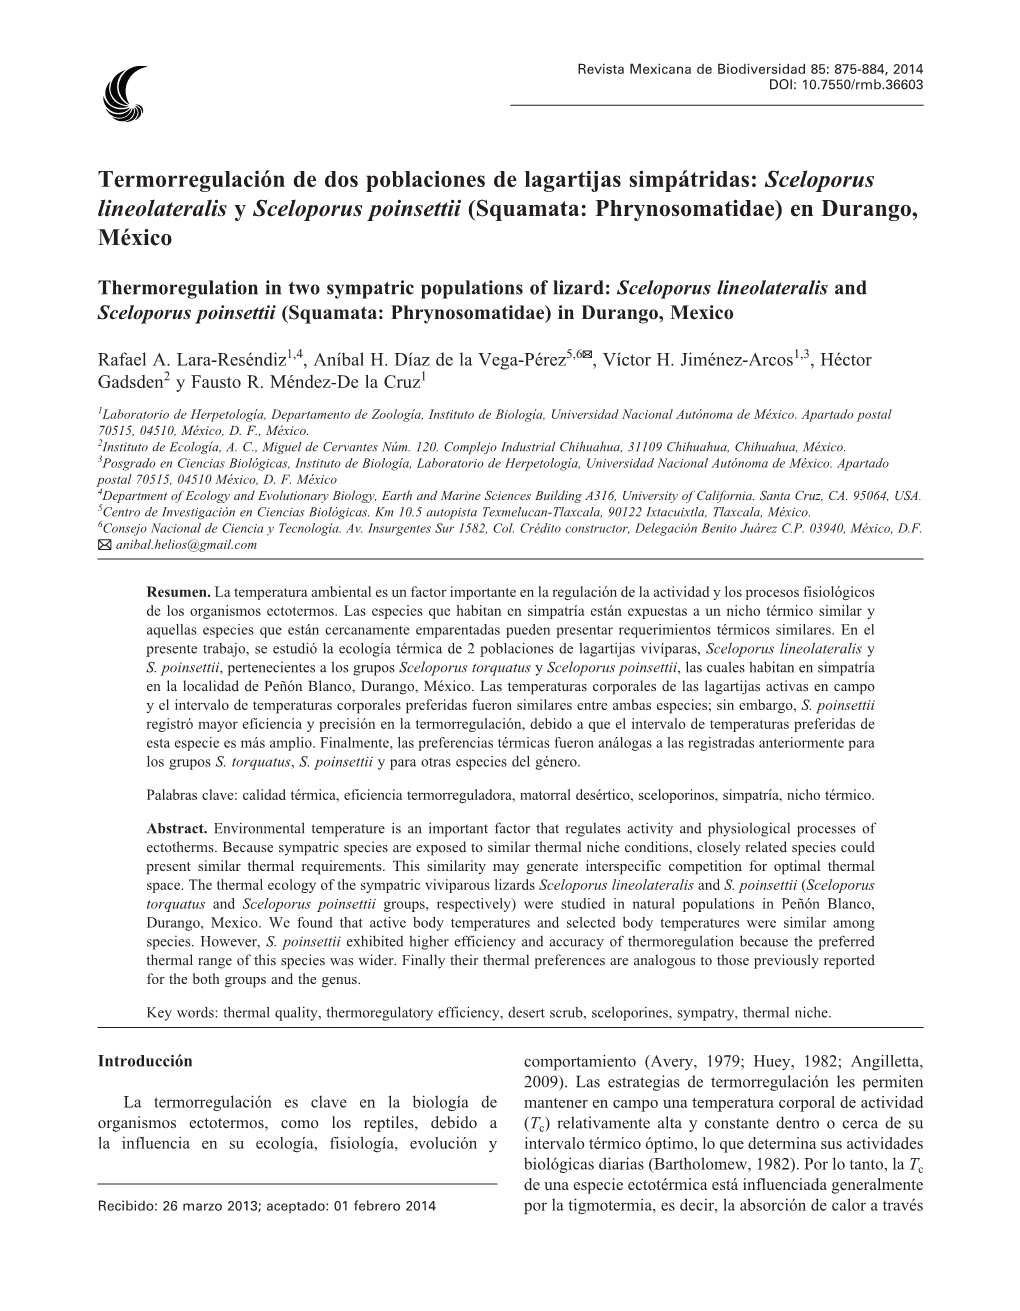 Termorregulación De Dos Poblaciones De Lagartijas Simpátridas: Sceloporus Lineolateralis Y Sceloporus Poinsettii (Squamata: Phrynosomatidae) En Durango, México